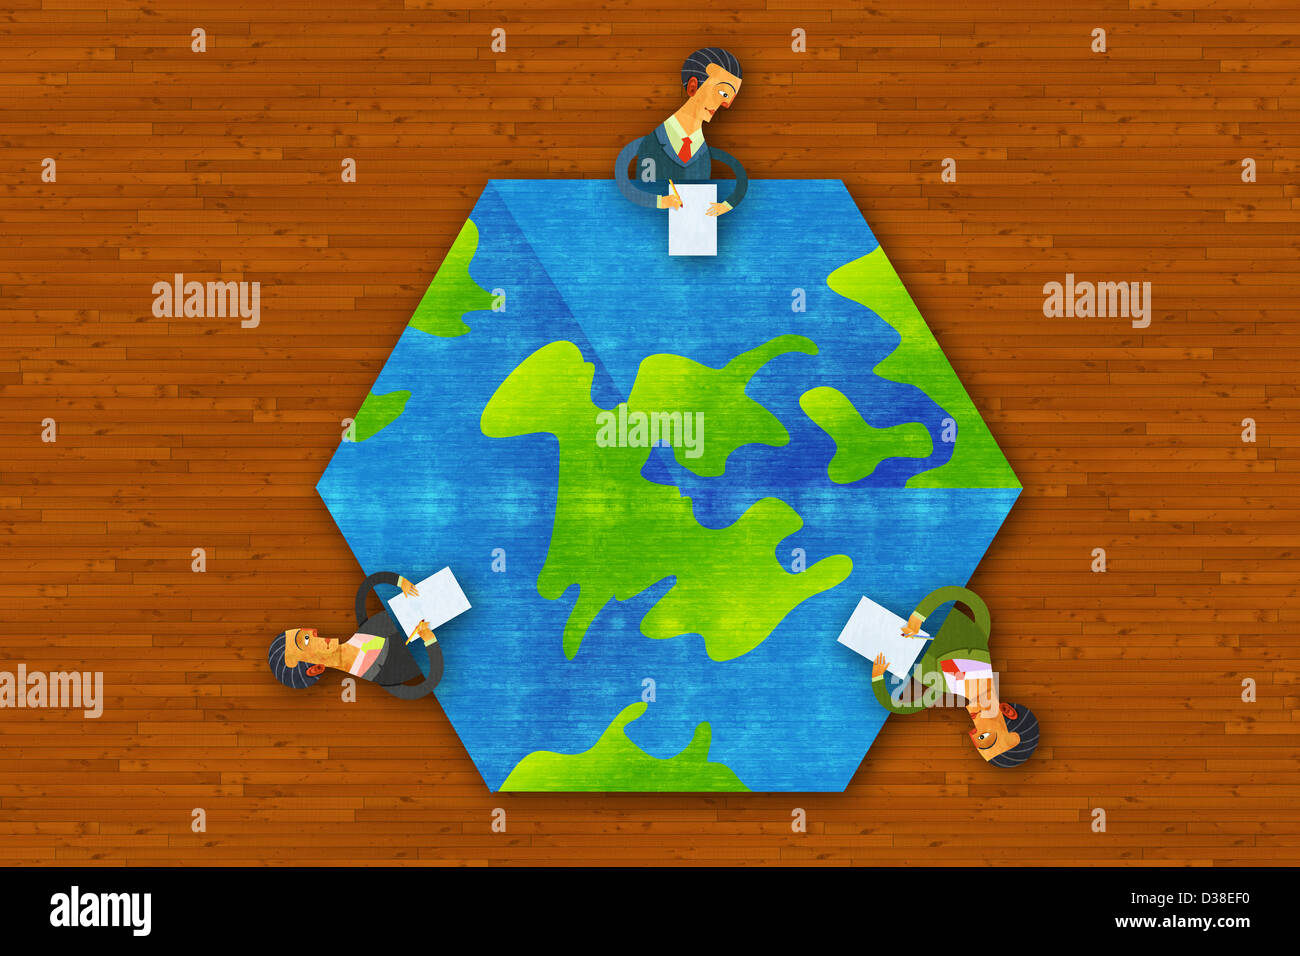 Anschauliches Bild von Geschäftsleuten um Erde vertreten global Business-meeting Stockfoto